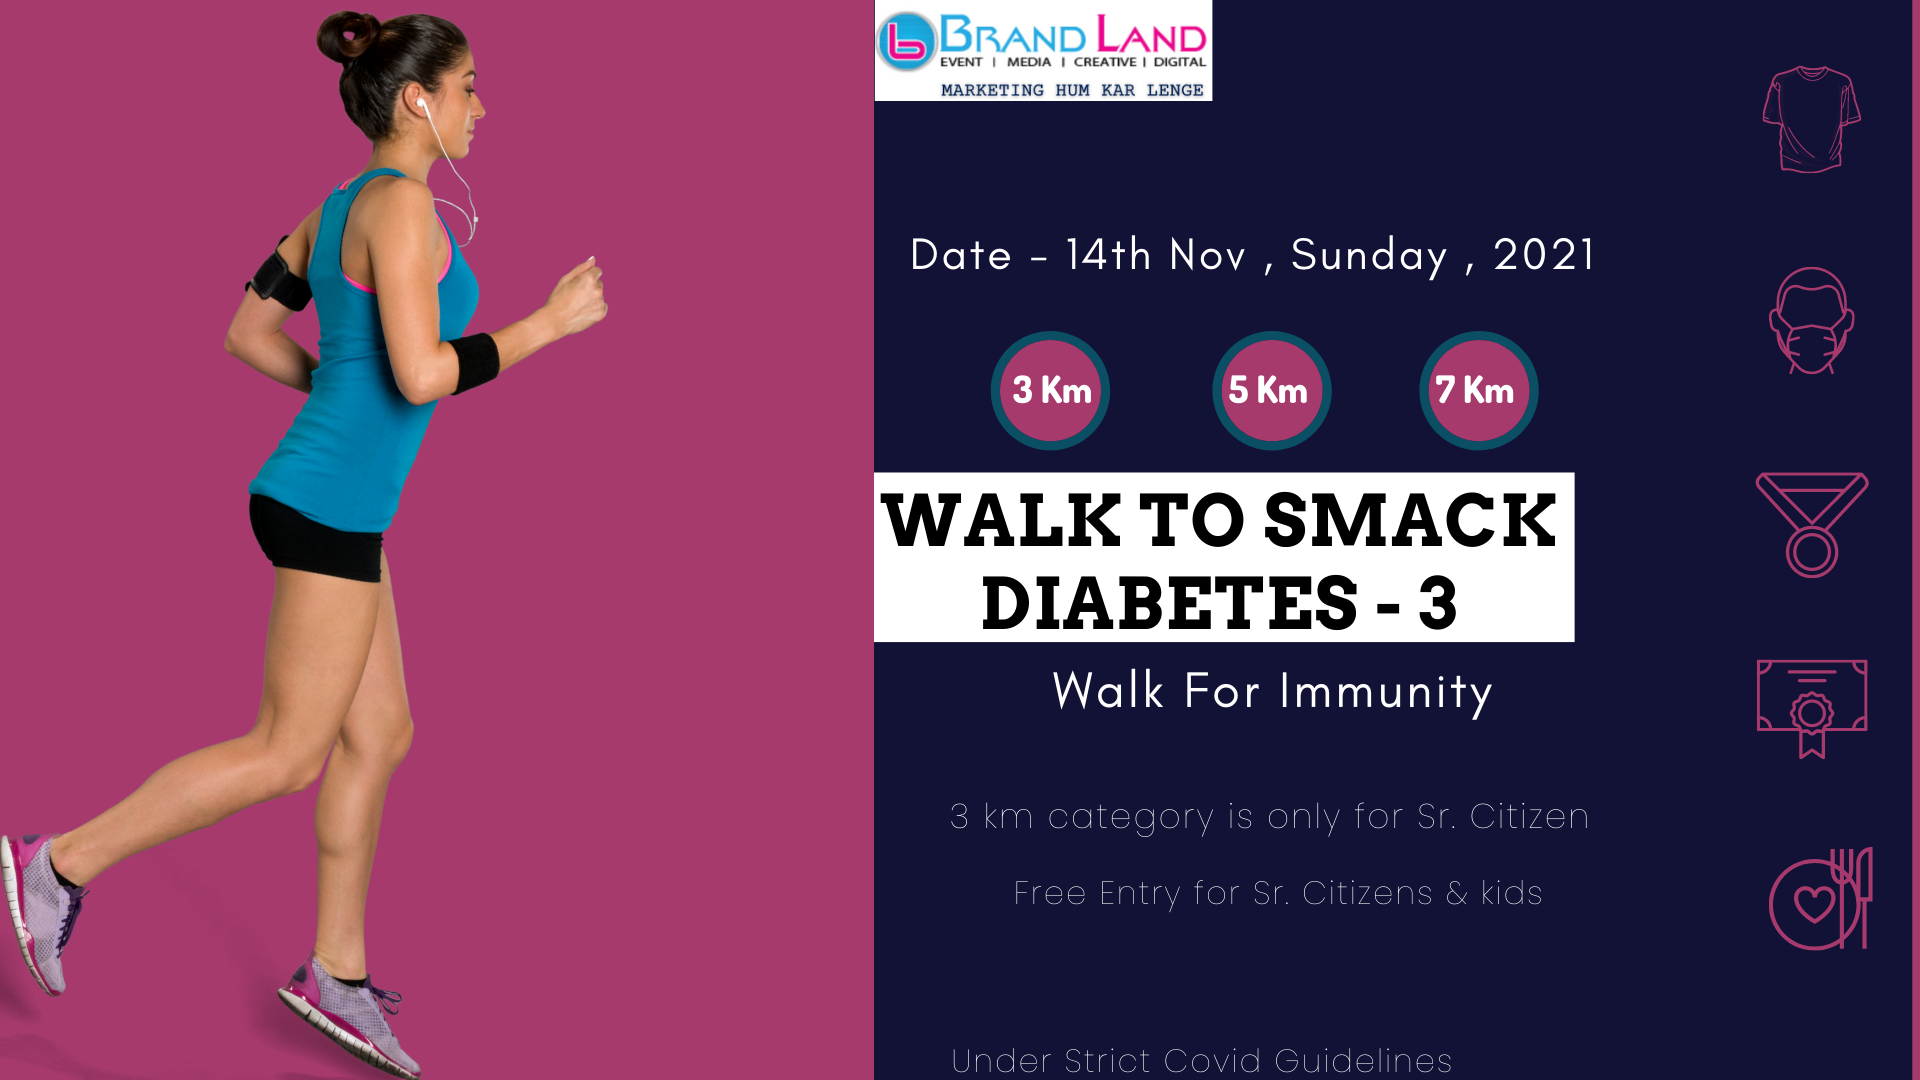 WALK TO SMACK DIABETES